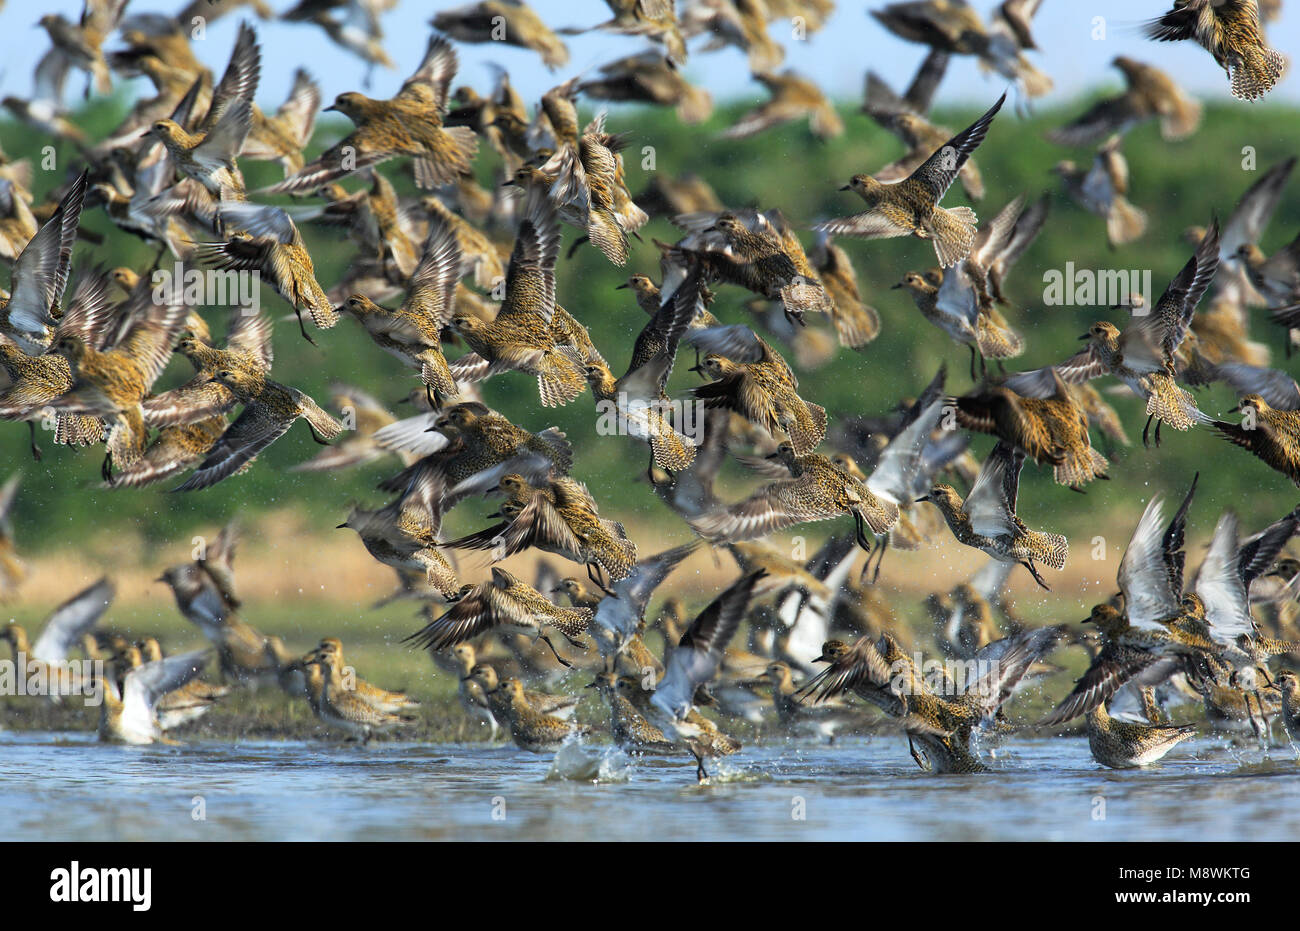 Groep vliegende trekkende Goudplevieren; Flock of flying migrating European Golden Plovers Stock Photo